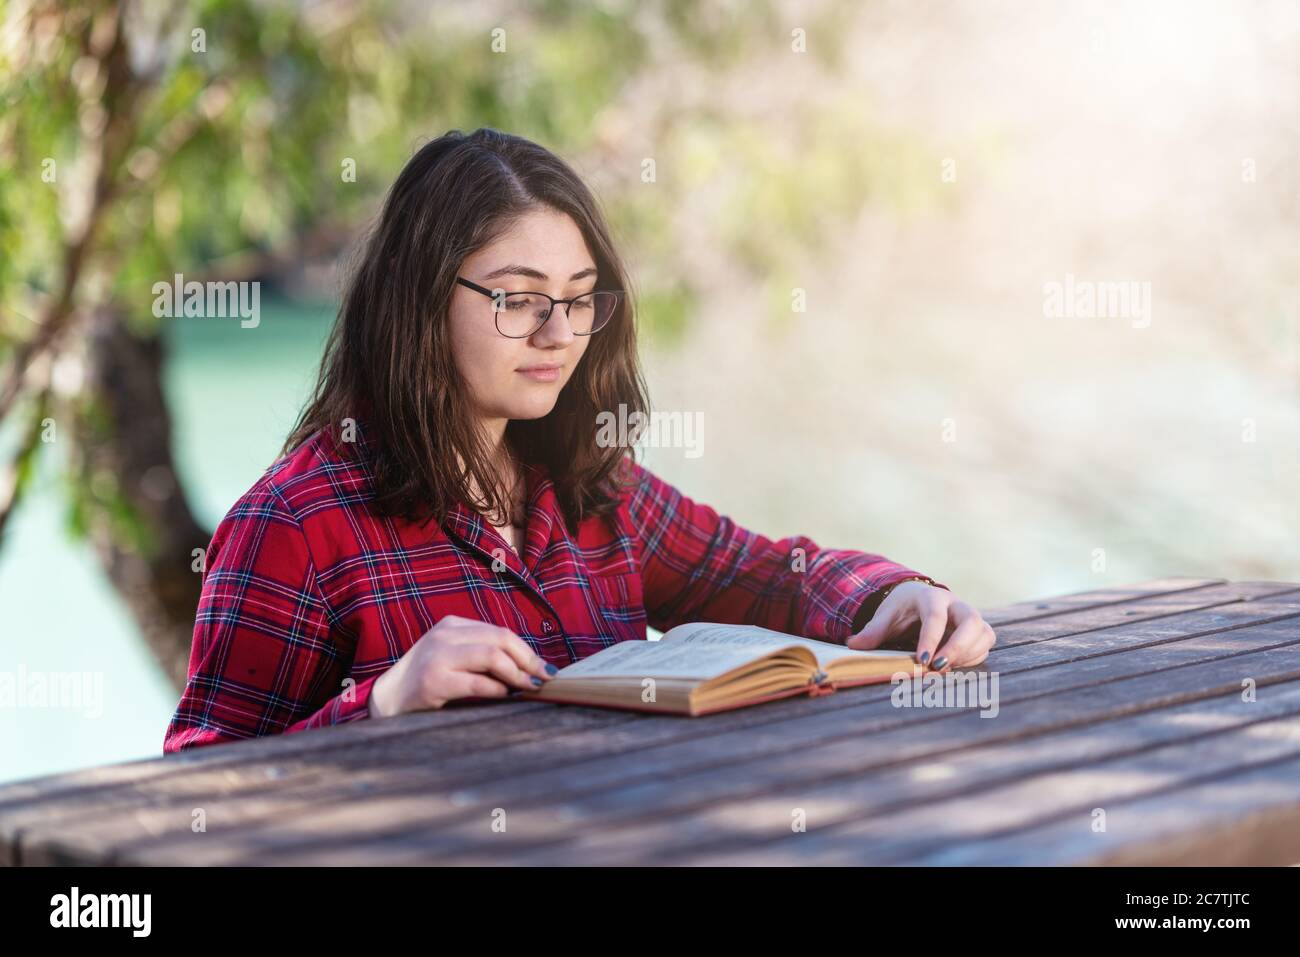 Giovane ragazza intellettuale seduta e leggendo libri o studiando con libri in un parco. Foto di alta qualità Foto Stock